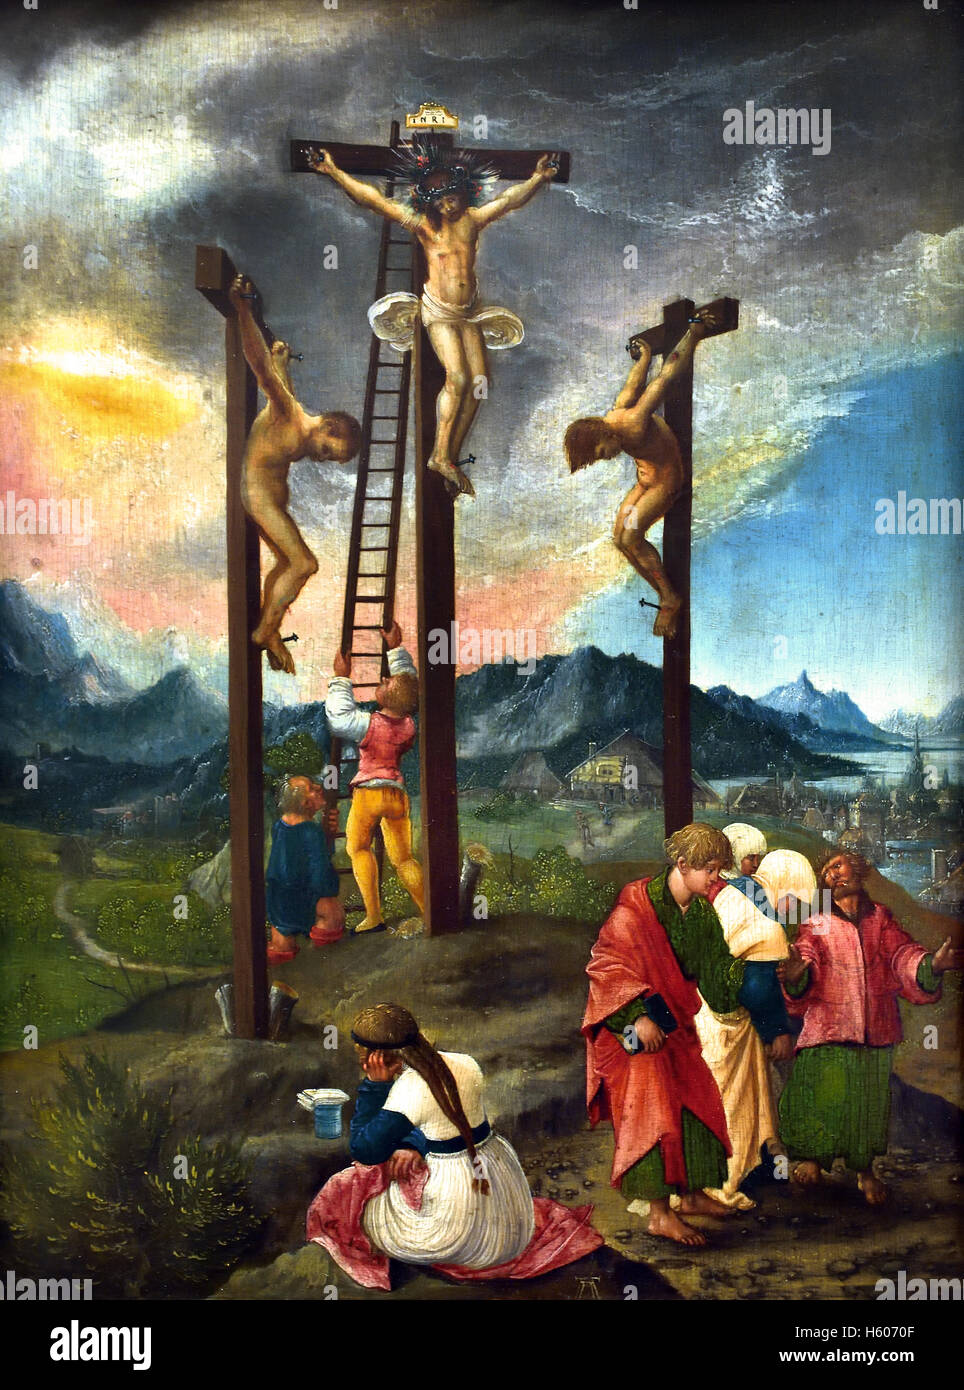 Le Christ en croix entre les cheminées1526 Albrecht, ( 1482 - 1538) Peintre, Regensburg, Allemagne Allemand Banque D'Images